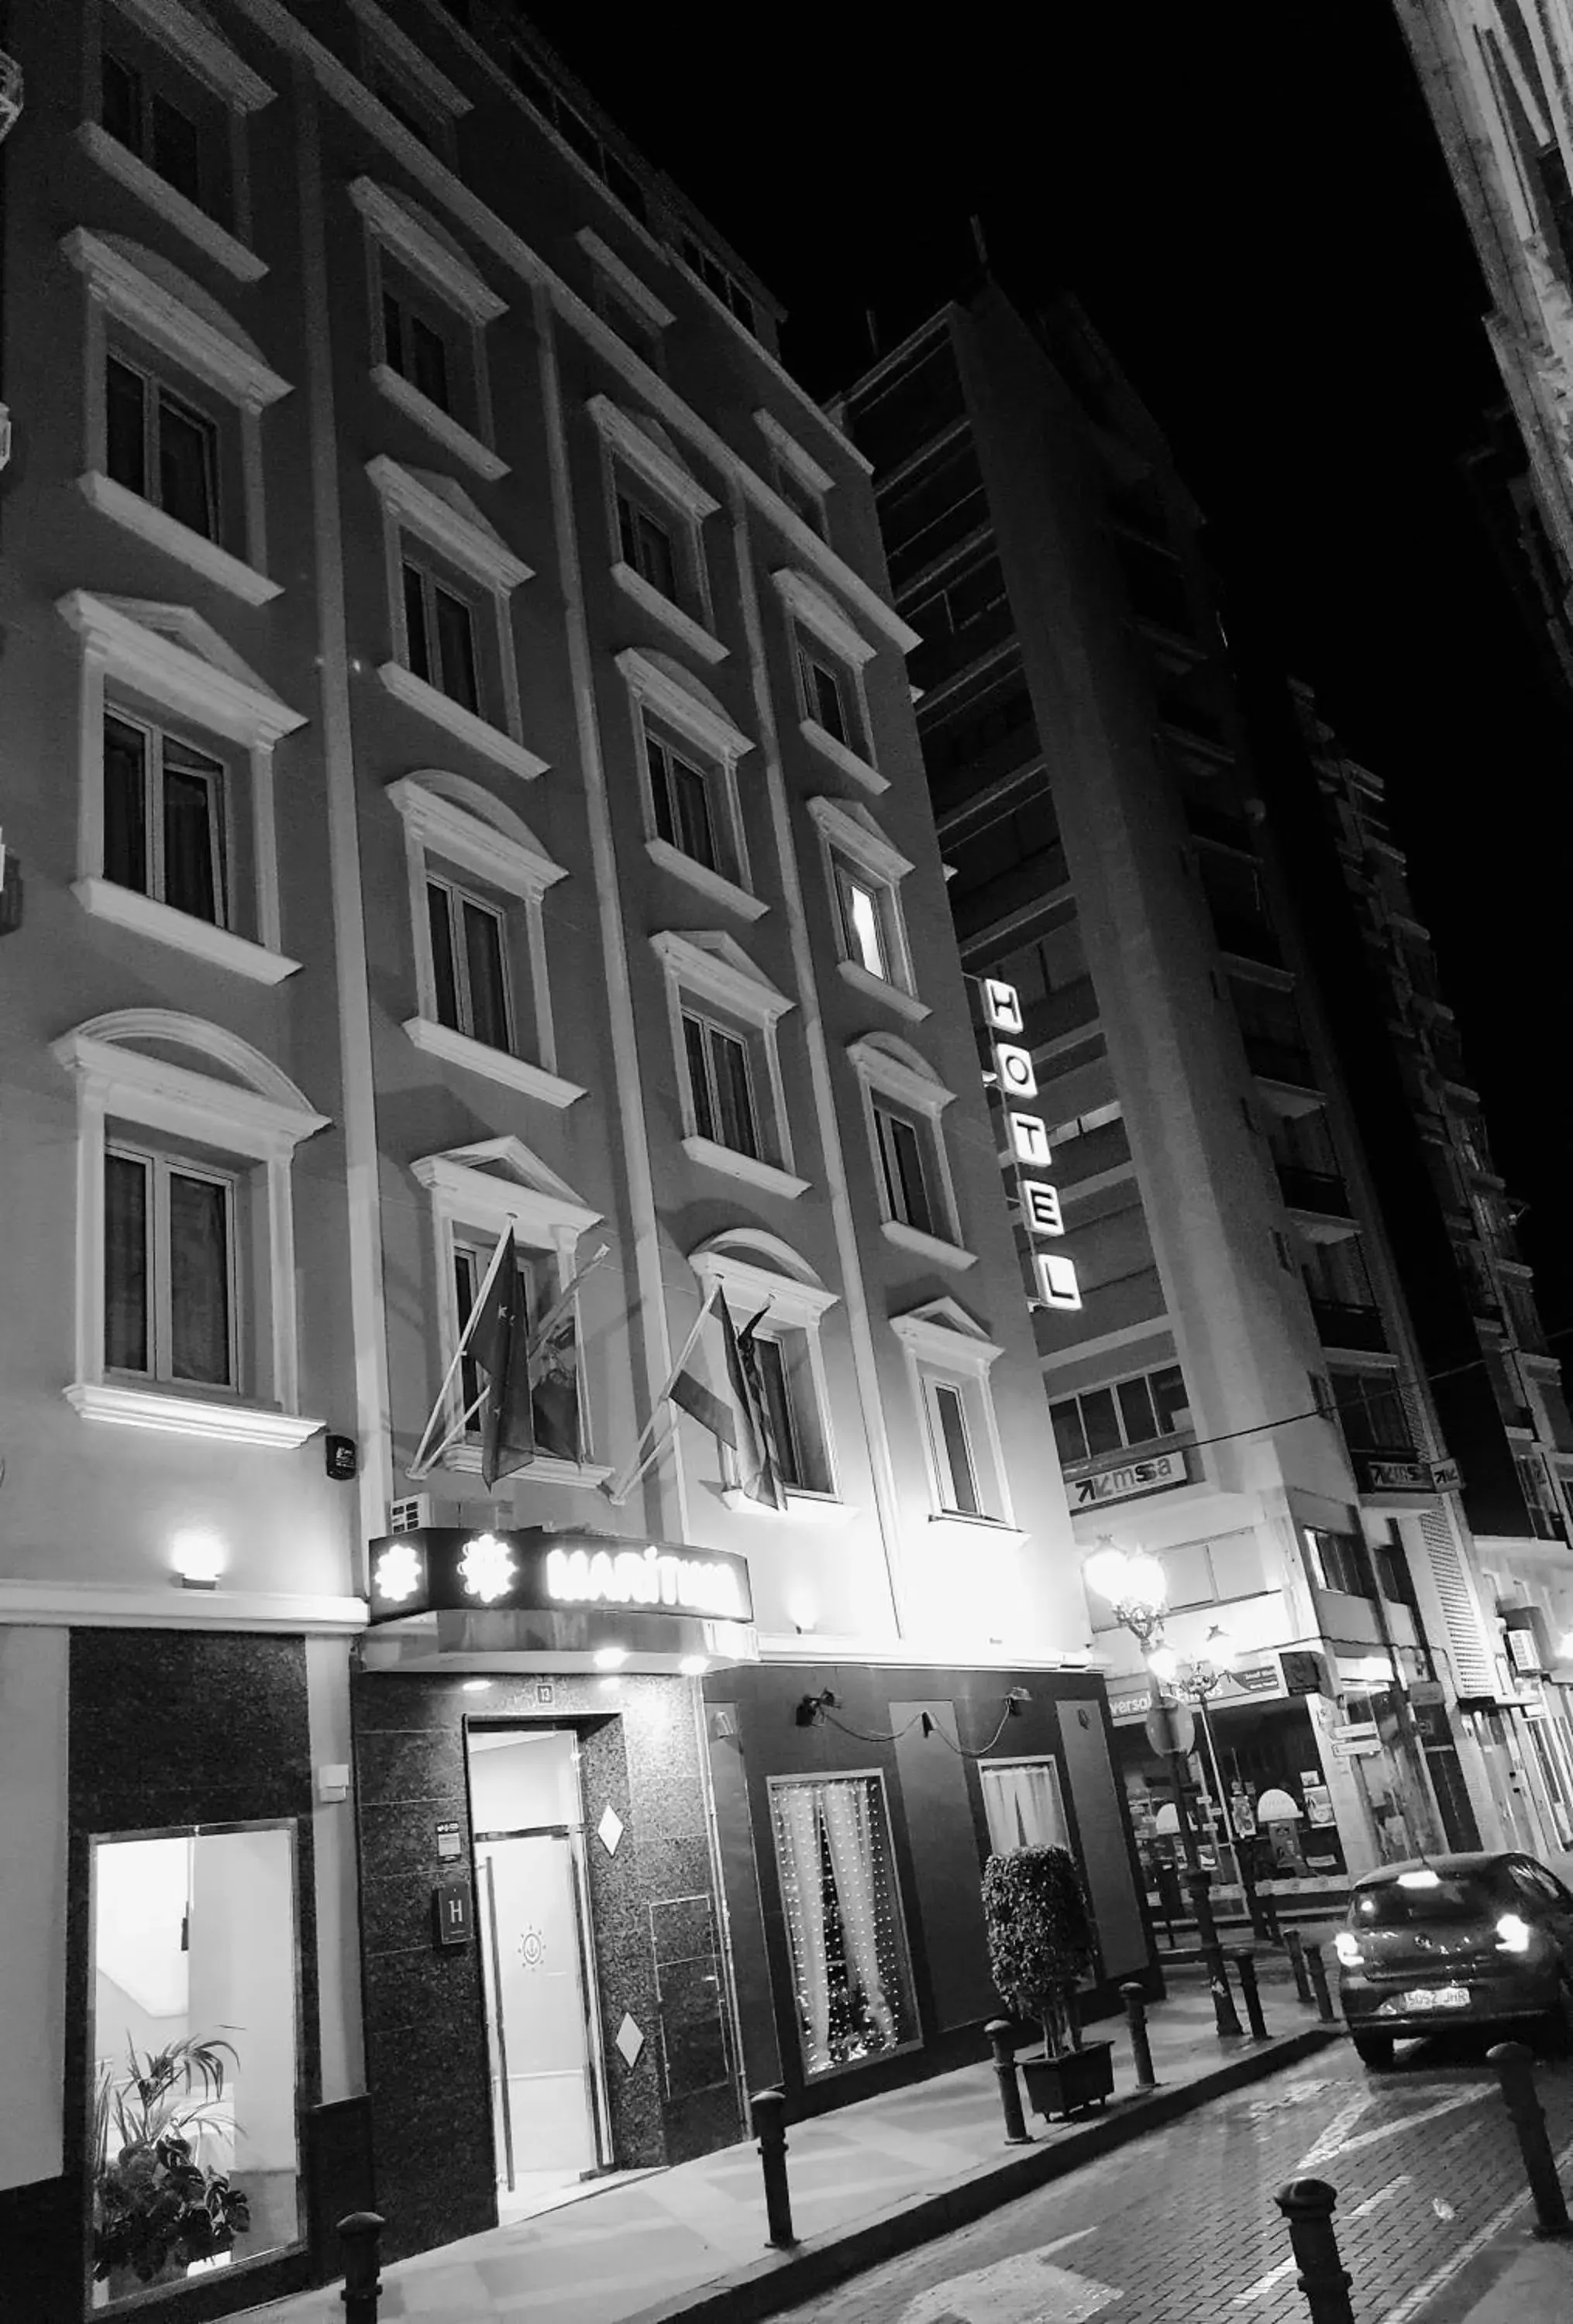 Facade/entrance, Property Building in Hotel Maritimo